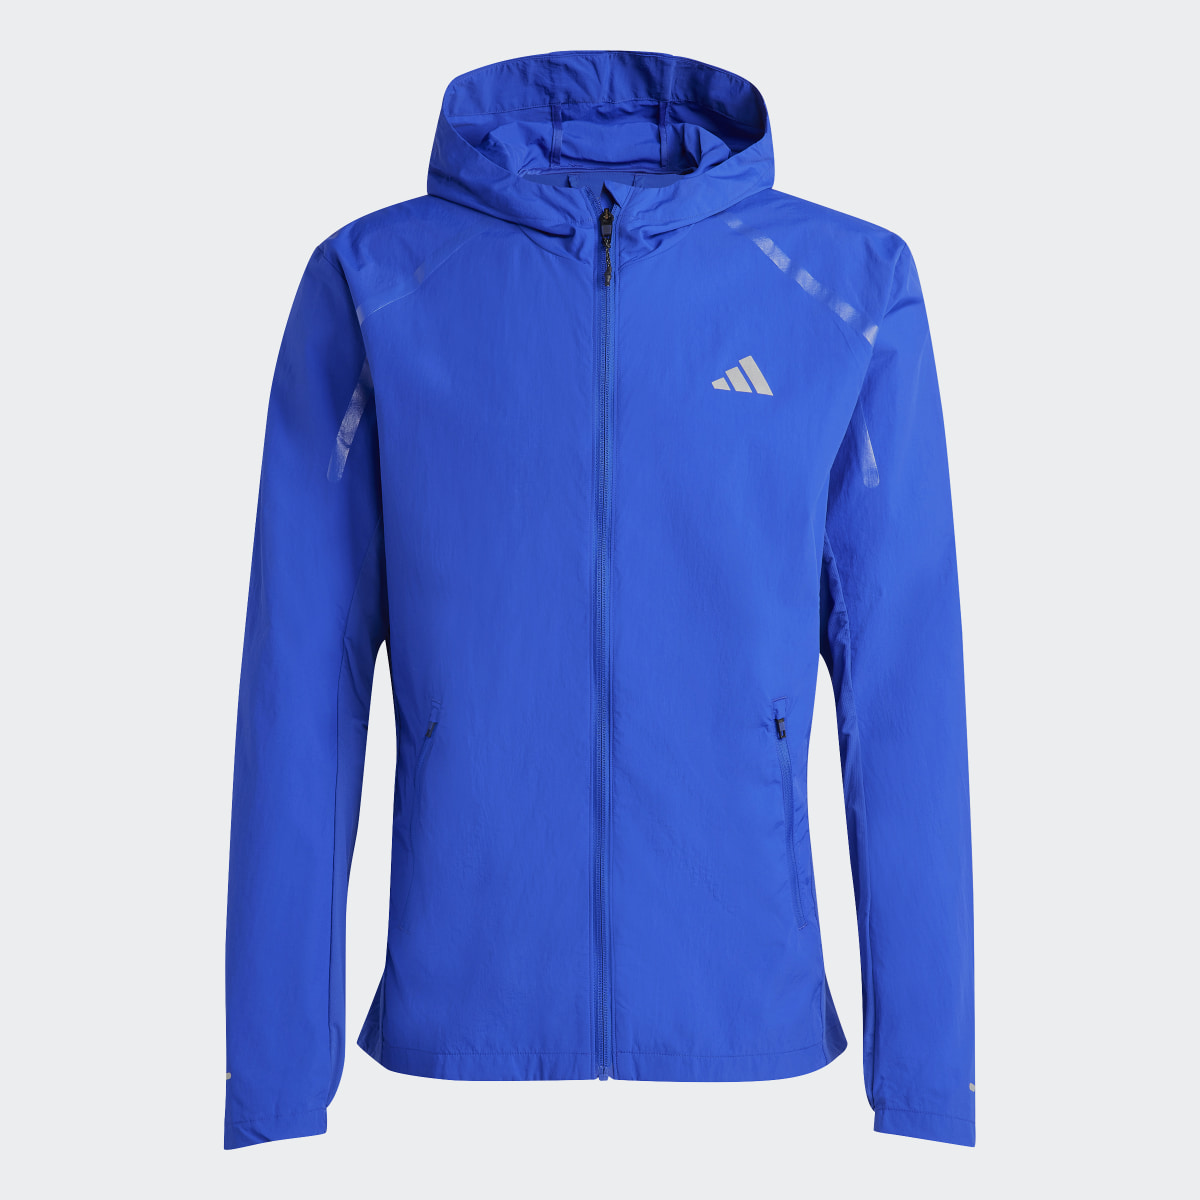 Adidas Marathon Warm-Up Jacket. 5